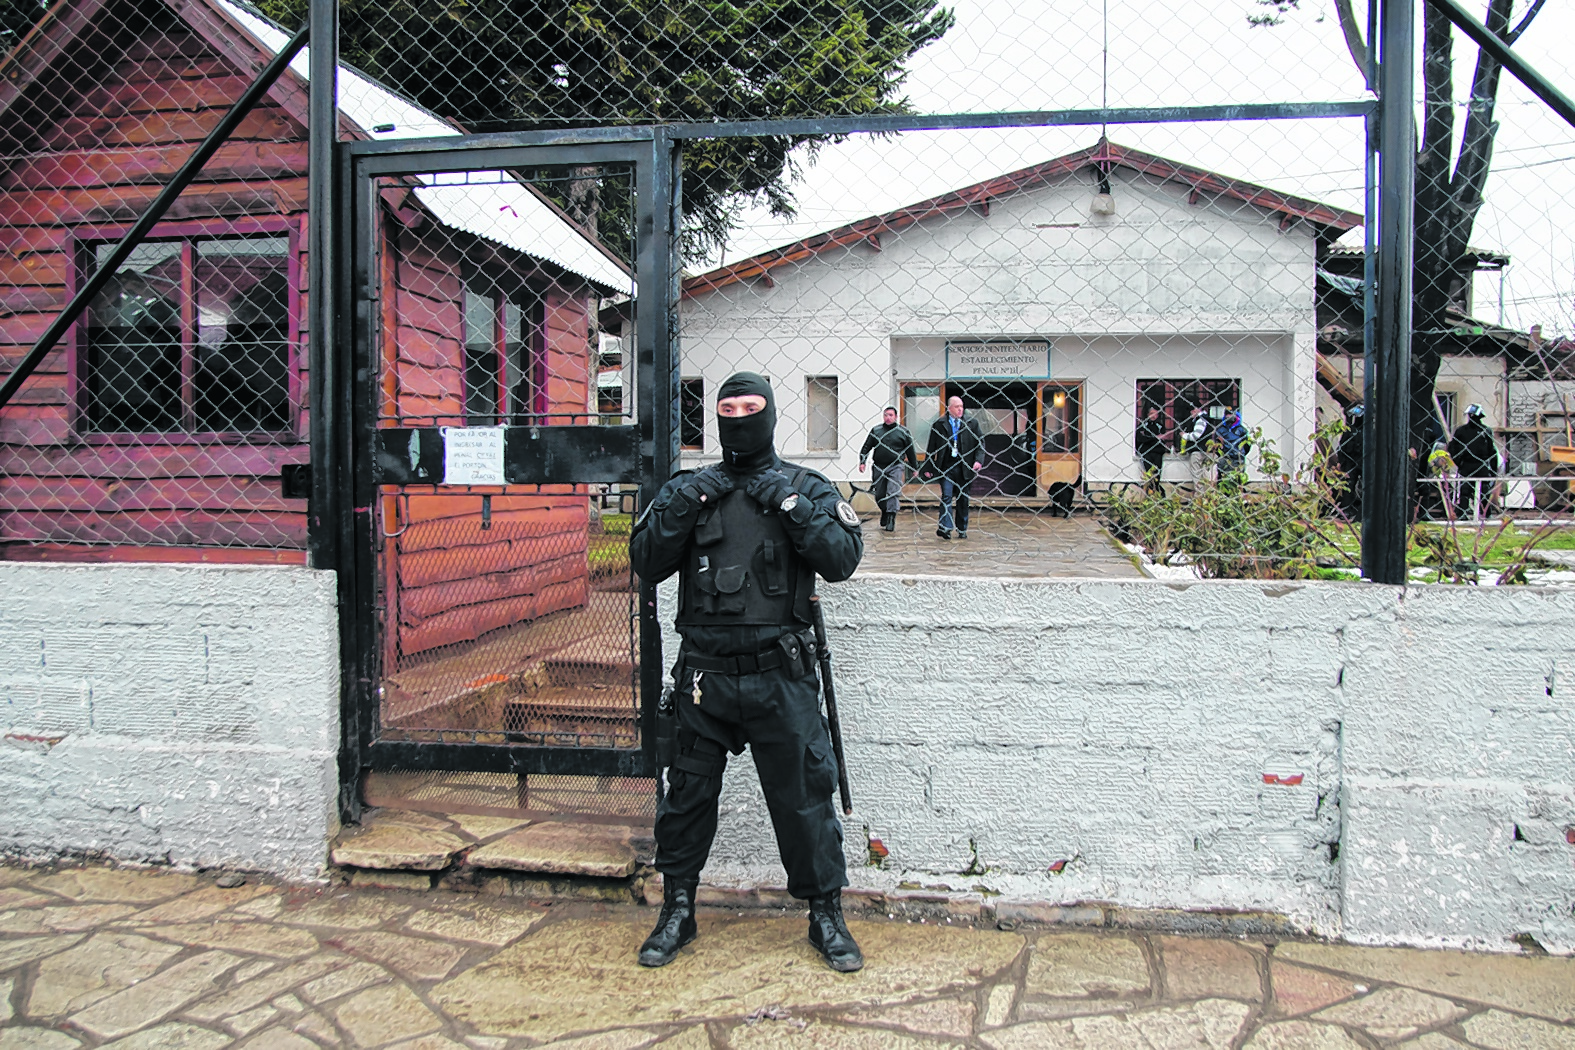 Como la sentencia quedó firme, el hombre condenado fue detenido y enviado a la cárcel de Bariloche a cumplir la pena. (Foto de archivo)